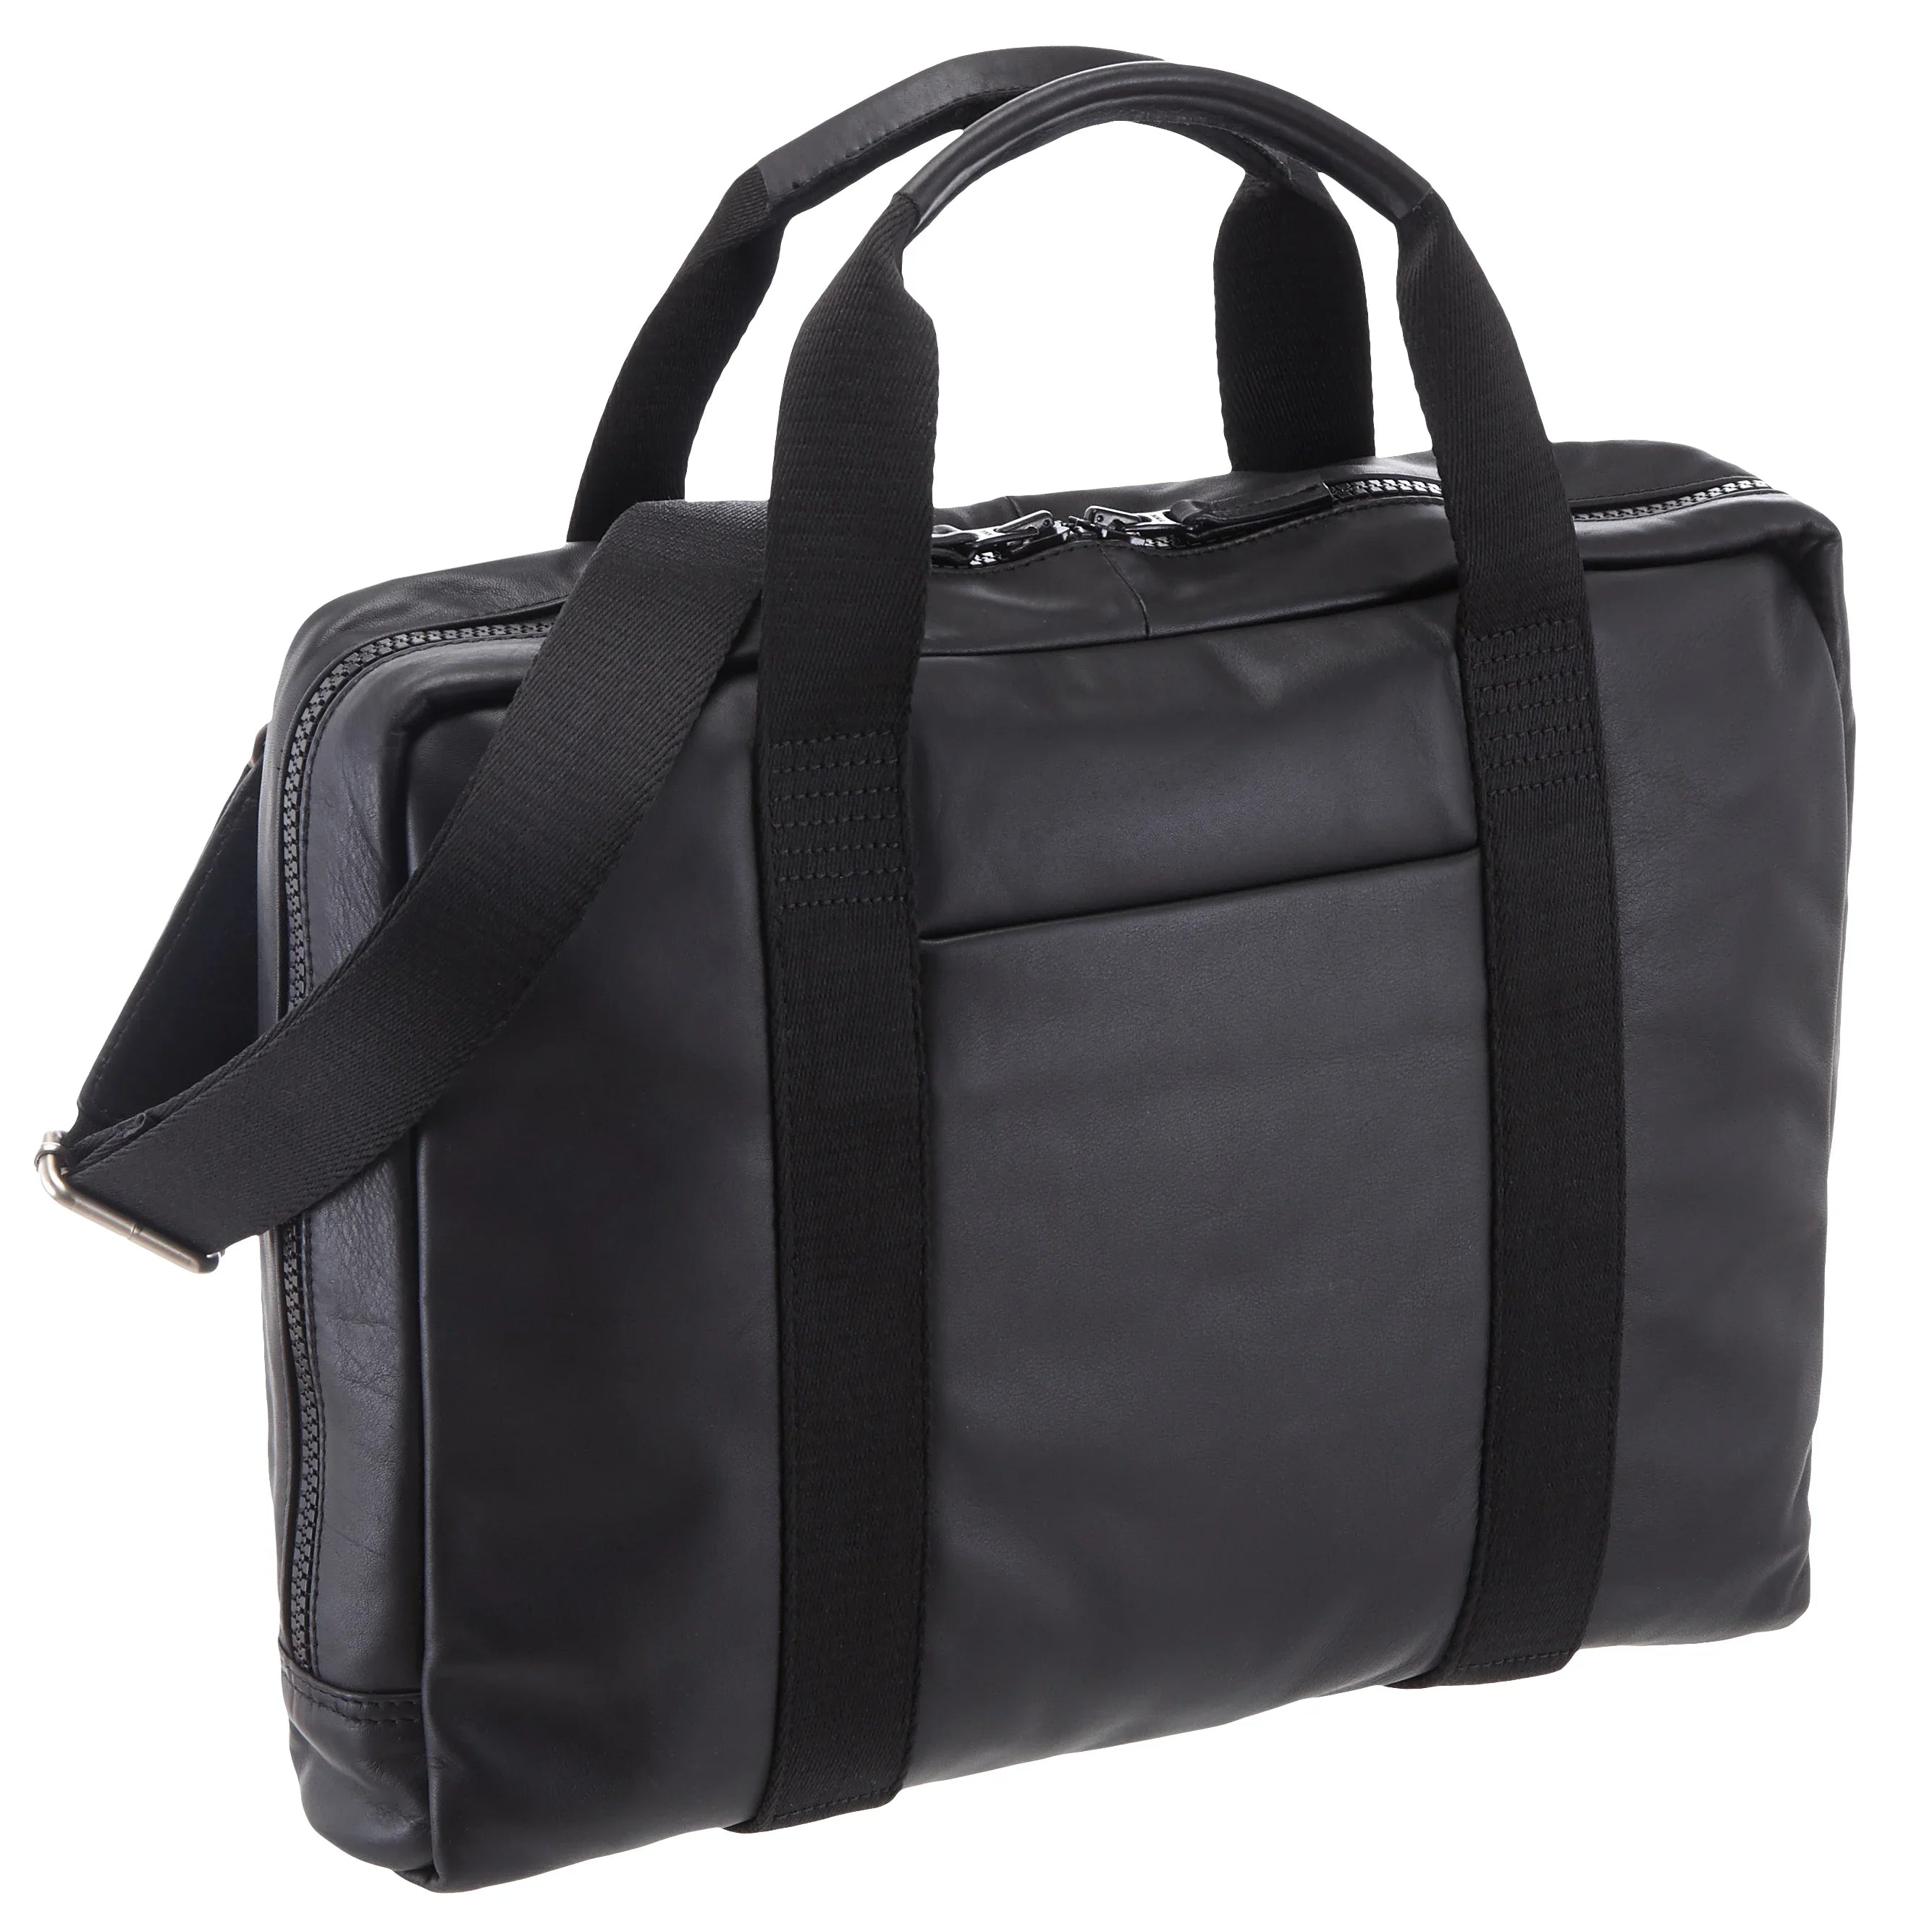 Leonhard Heyden Long Island shoulder bag with laptop compartment 40 cm - black